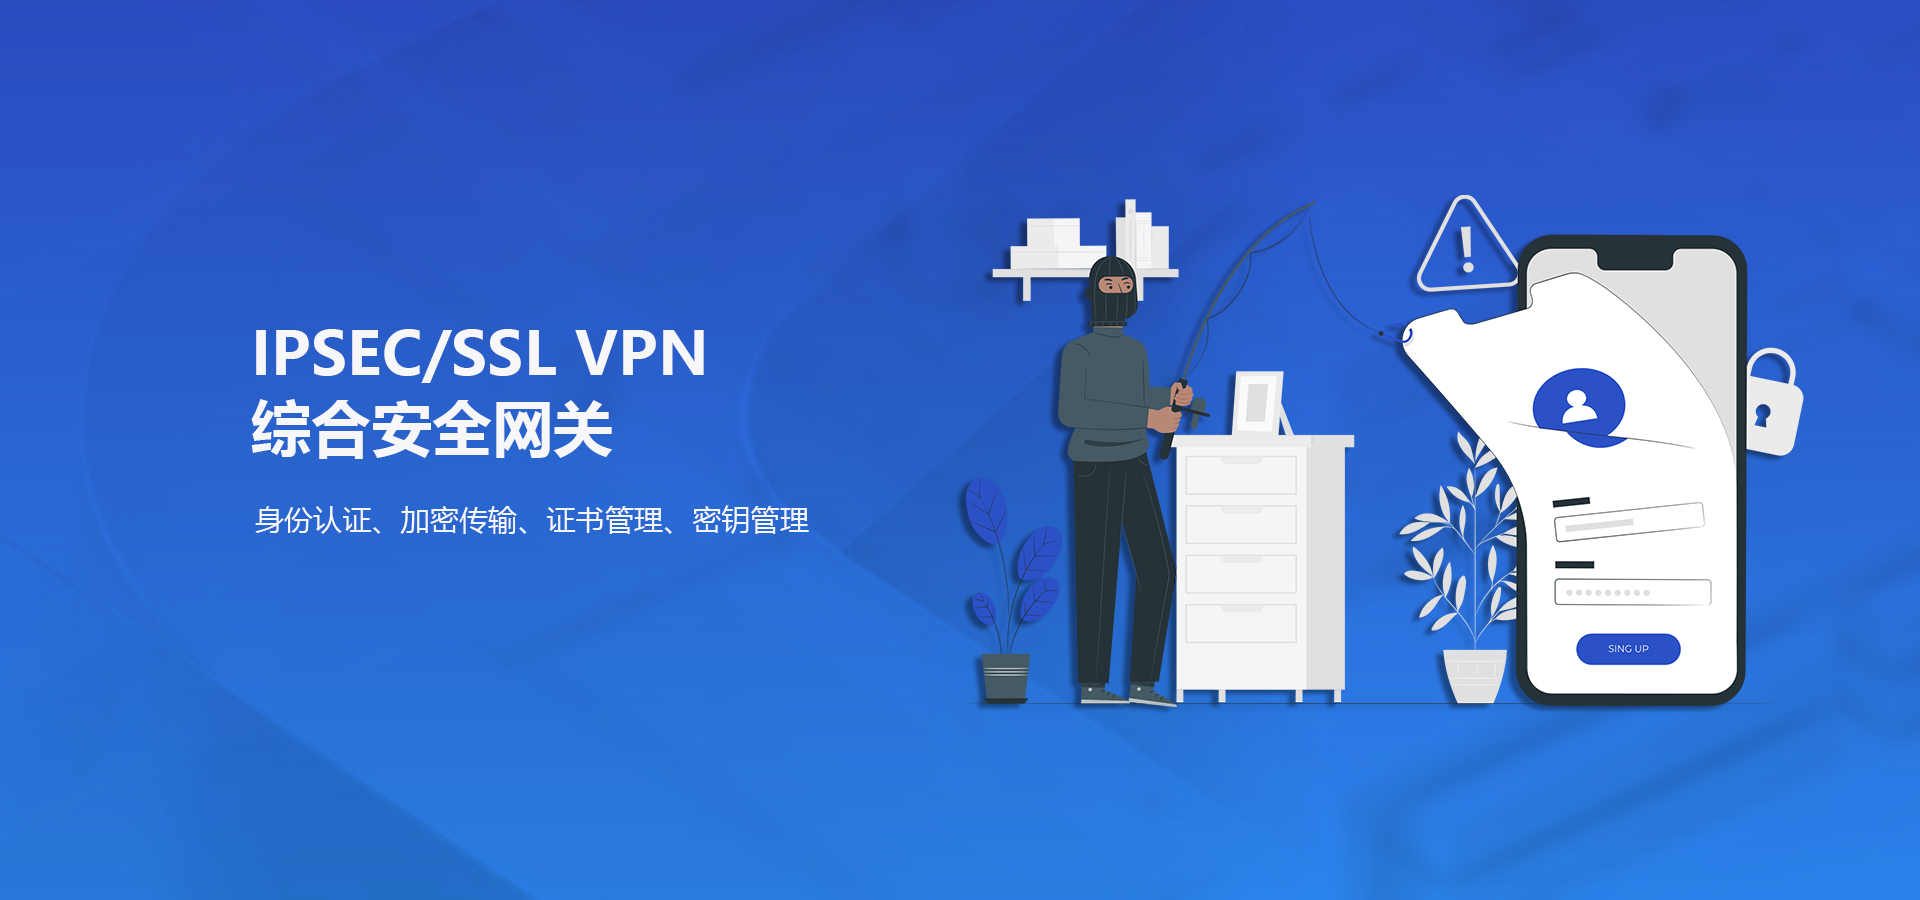 首传信安_服务器密码机_VPN综合安全网关_5G加密网关_透明传输加密网关_量子安全网关_加密卡